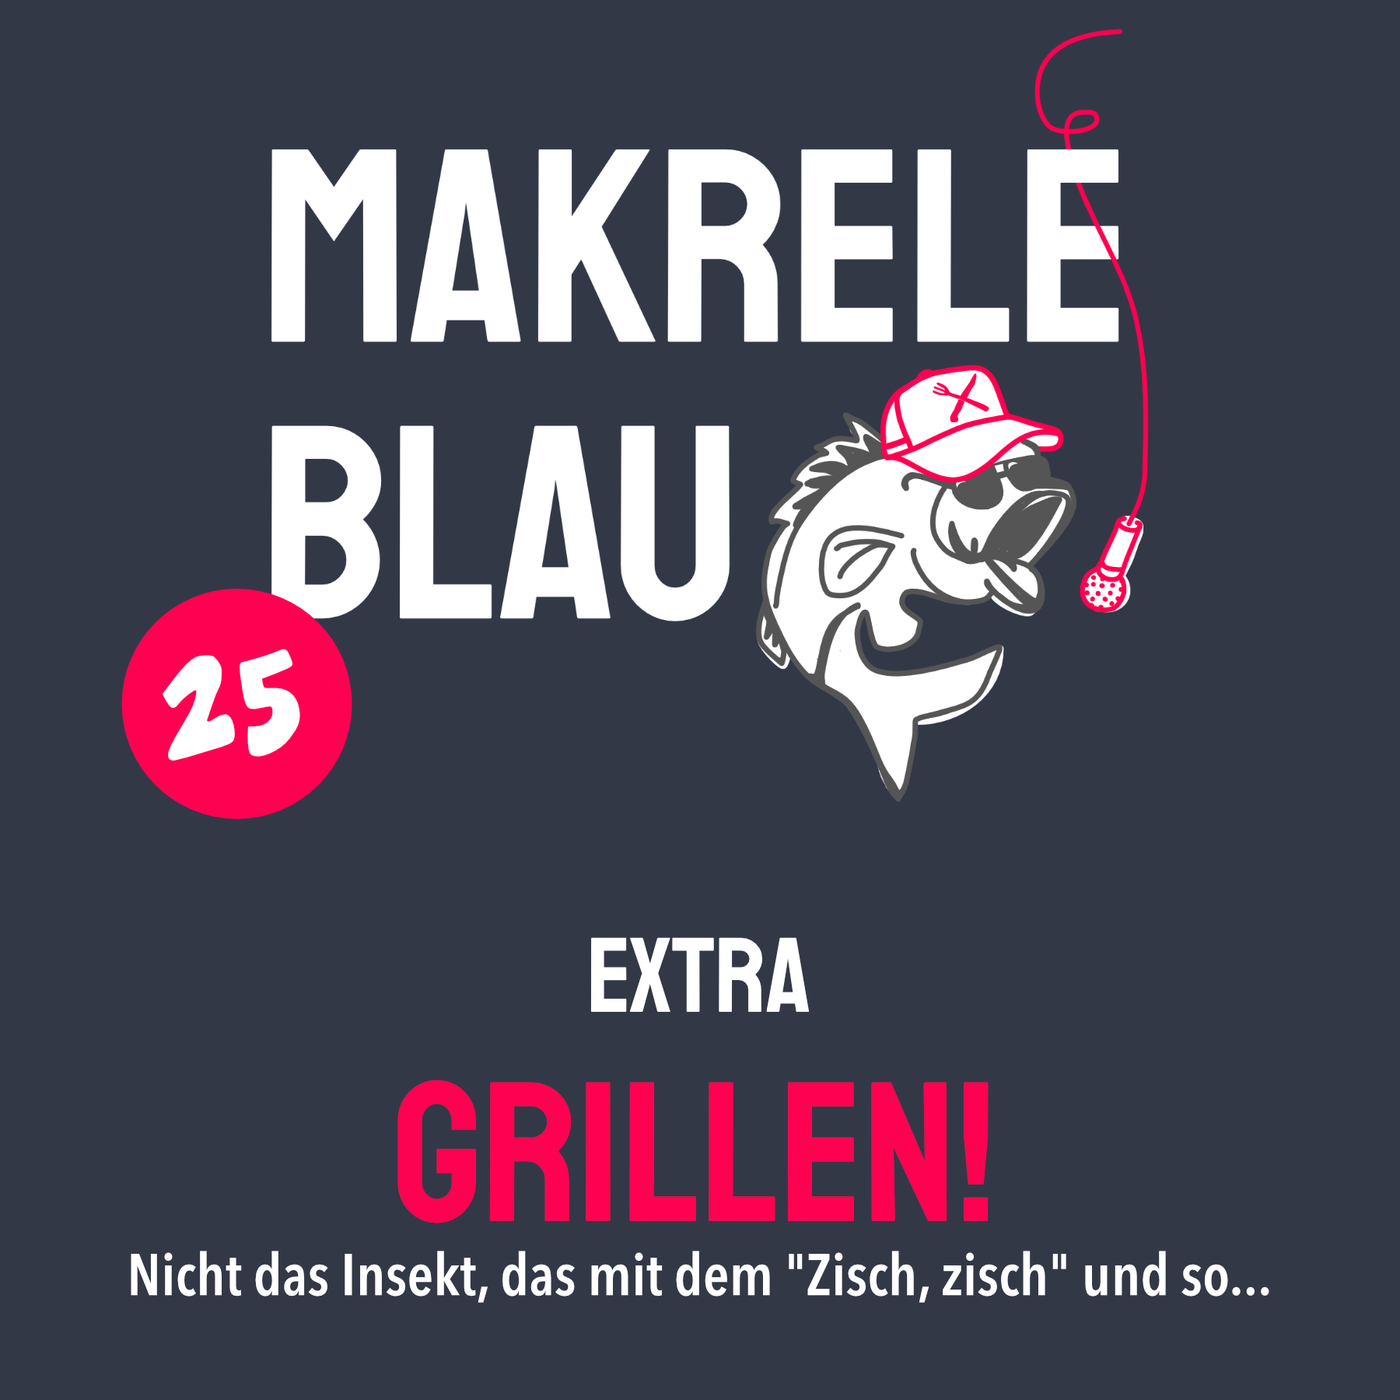 Makrele Blau #25 – Wir eröffnen die Grillsaison!